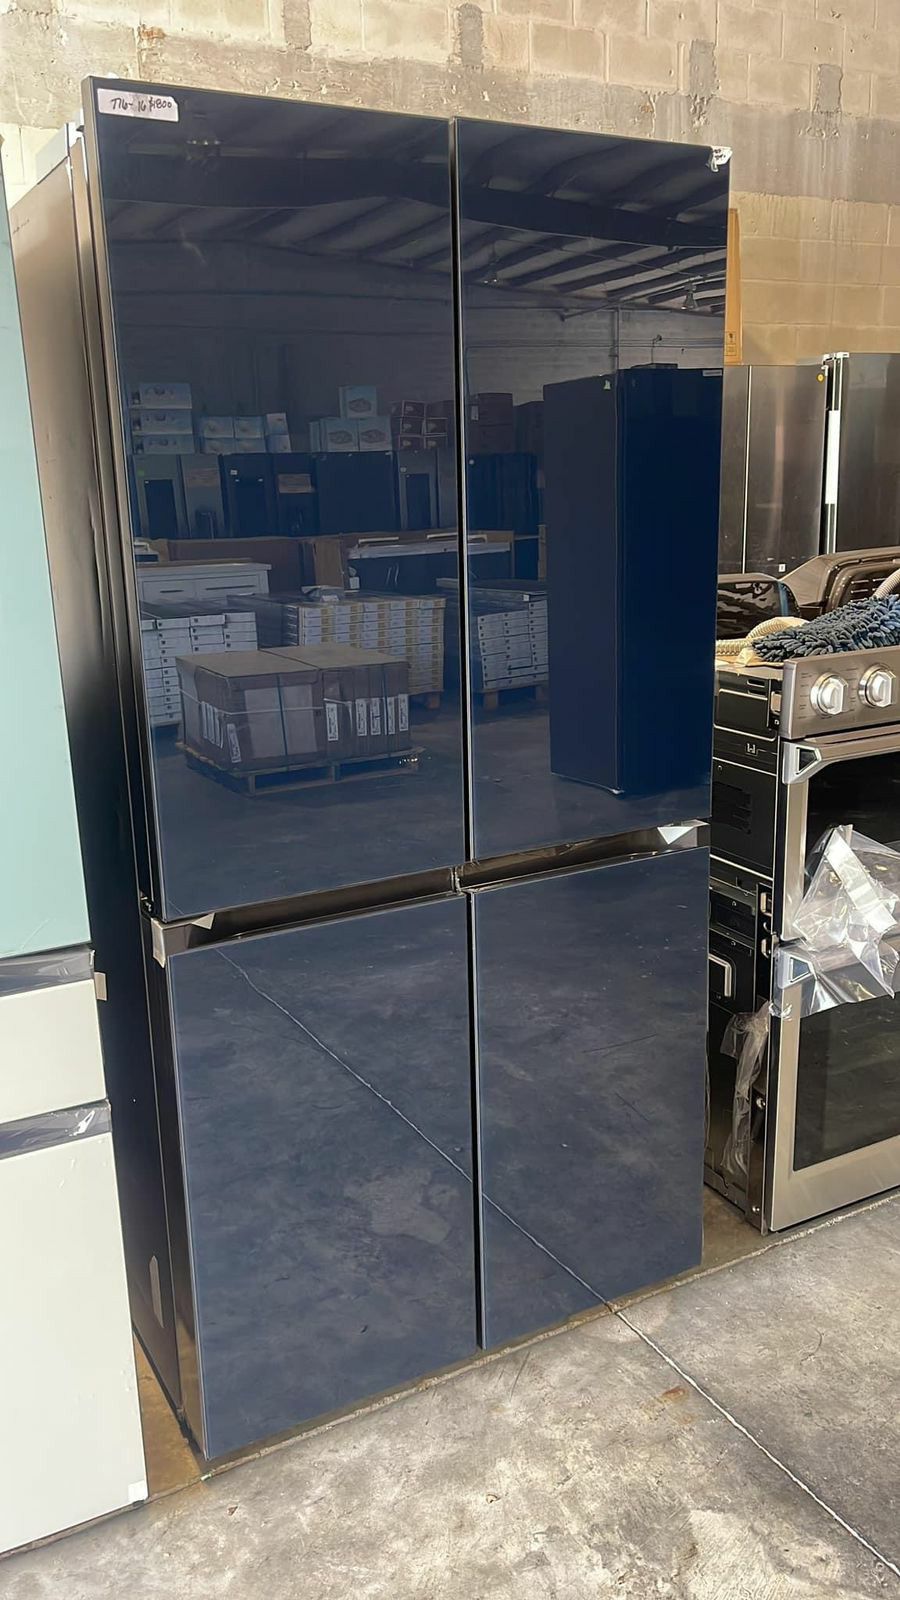 New-Bespoke-4-Door-Flex-French-Door-Smart-Refrigerator-with-Beverage-Center-in-White-Glass-Standard-Depth